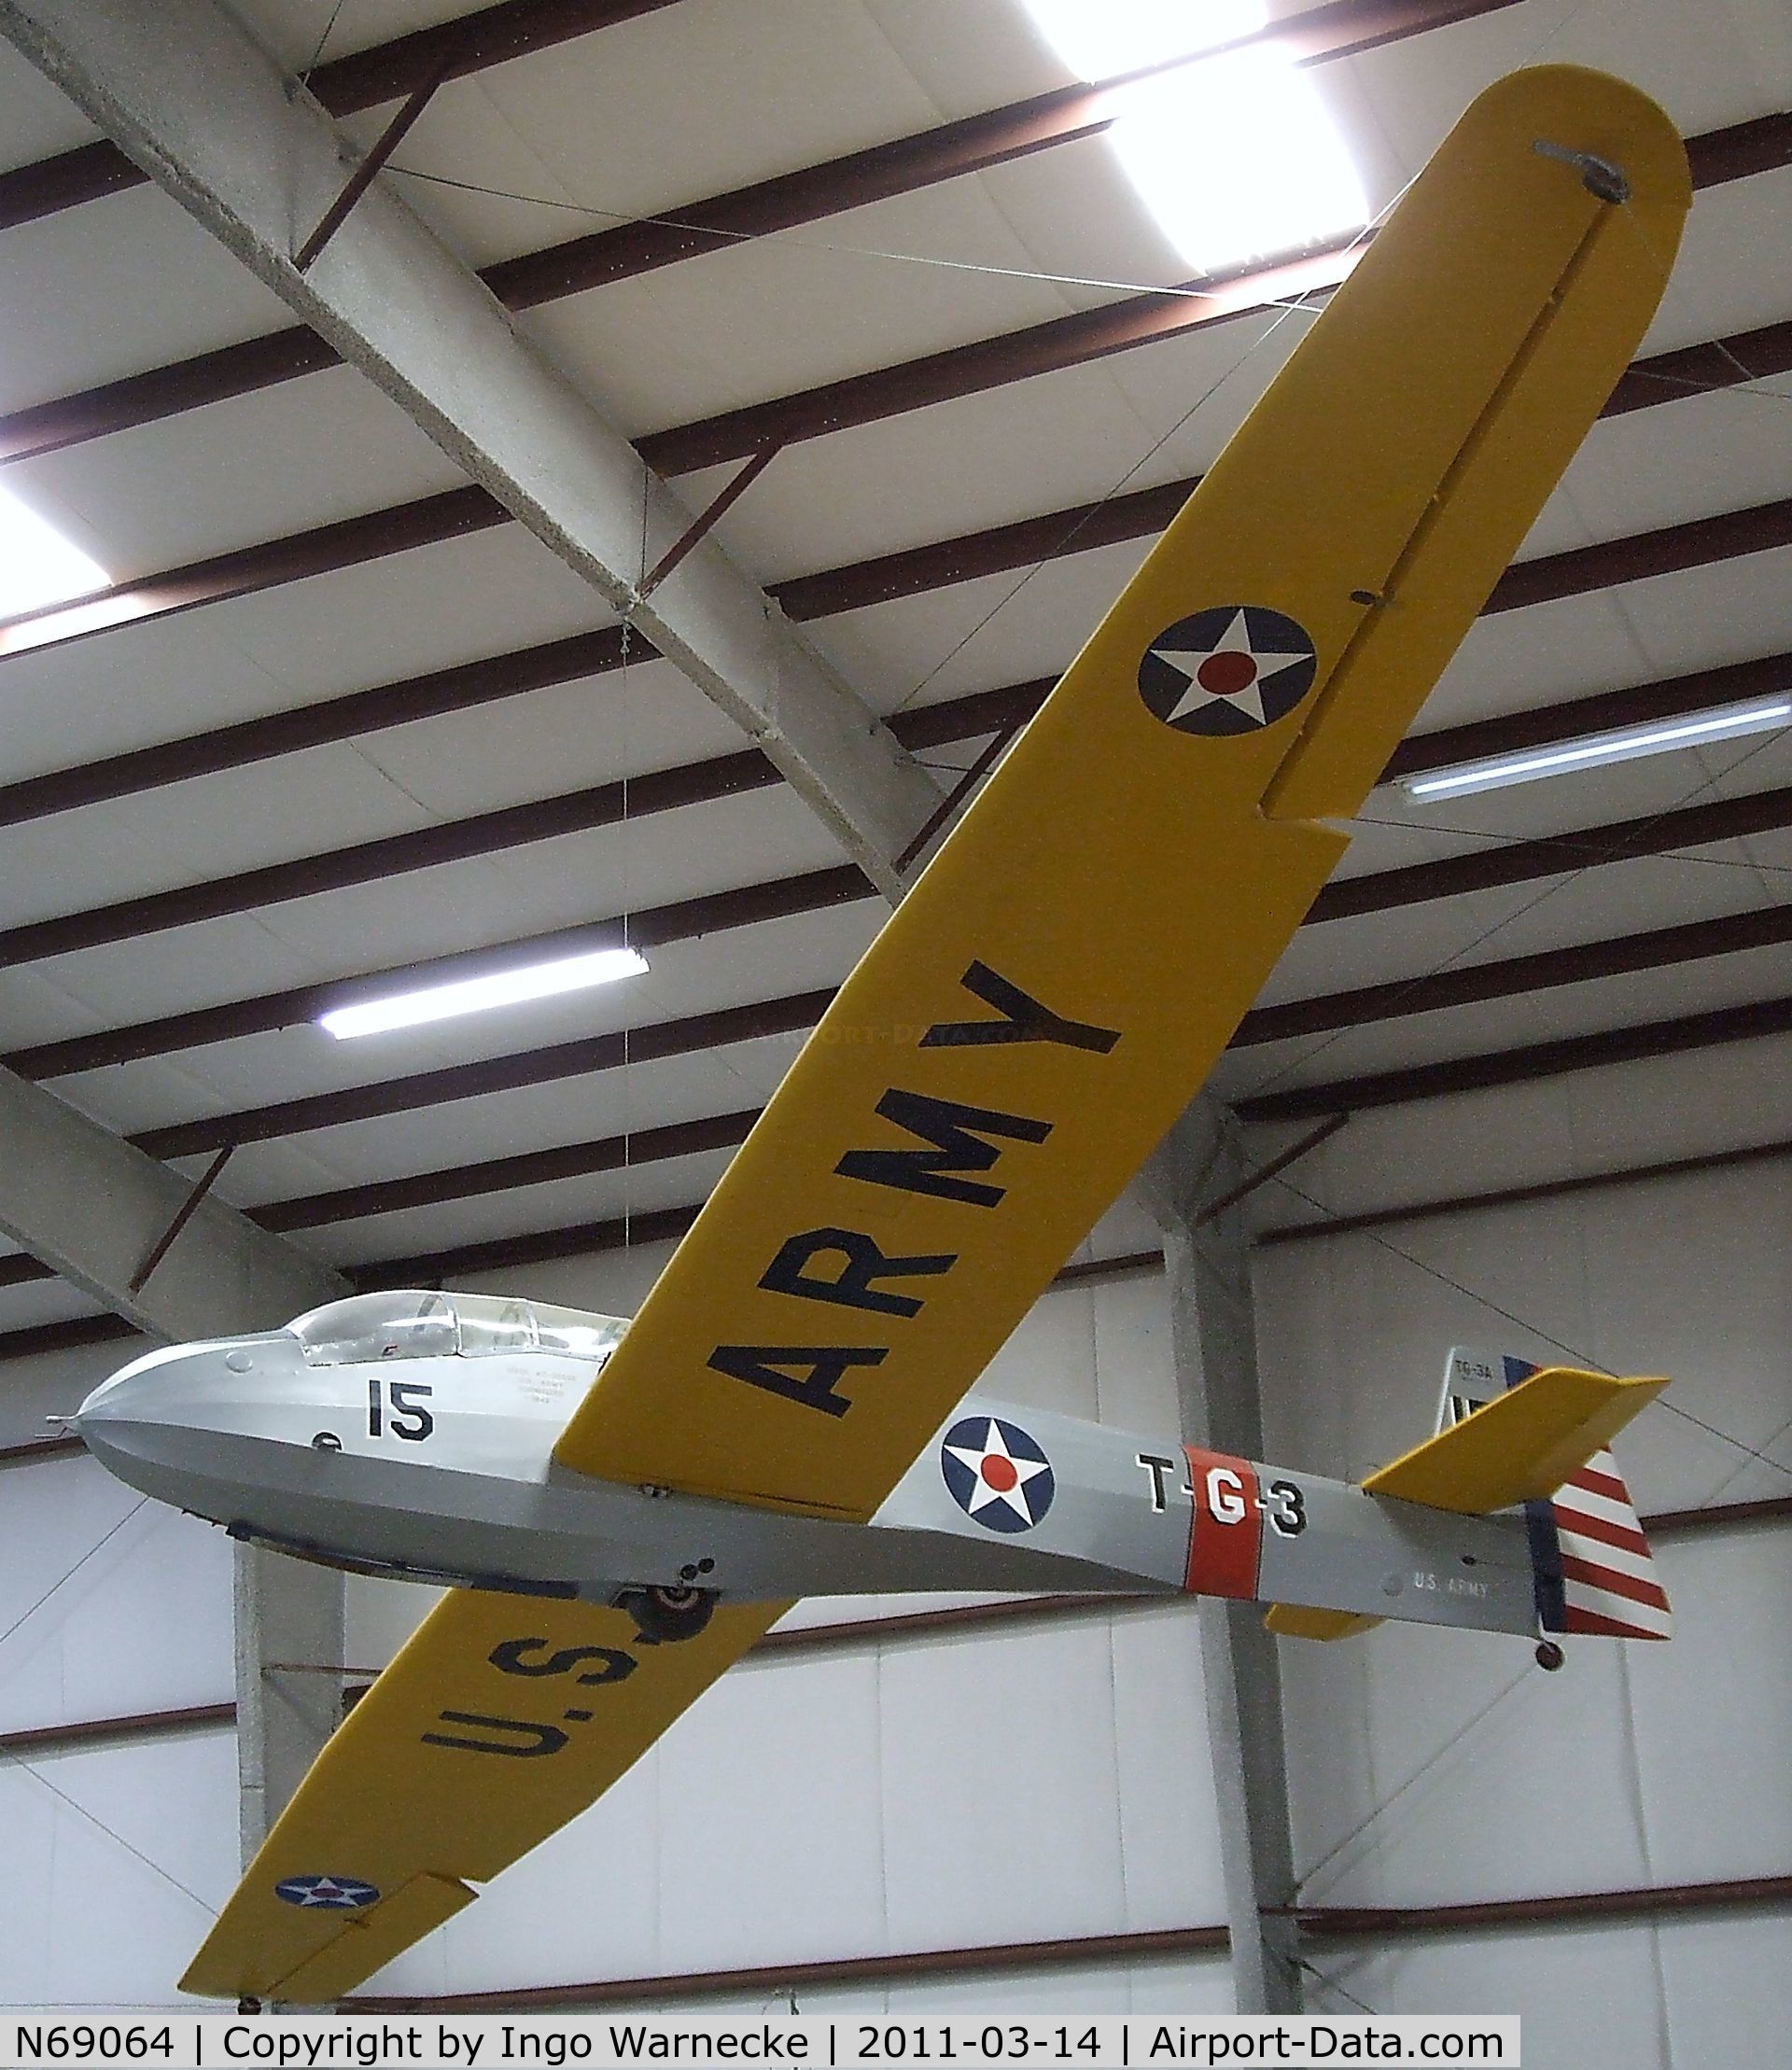 N69064, Schweizer TG-3A C/N 15, Schweizer TG-3A at the Pima Air & Space Museum, Tucson AZ